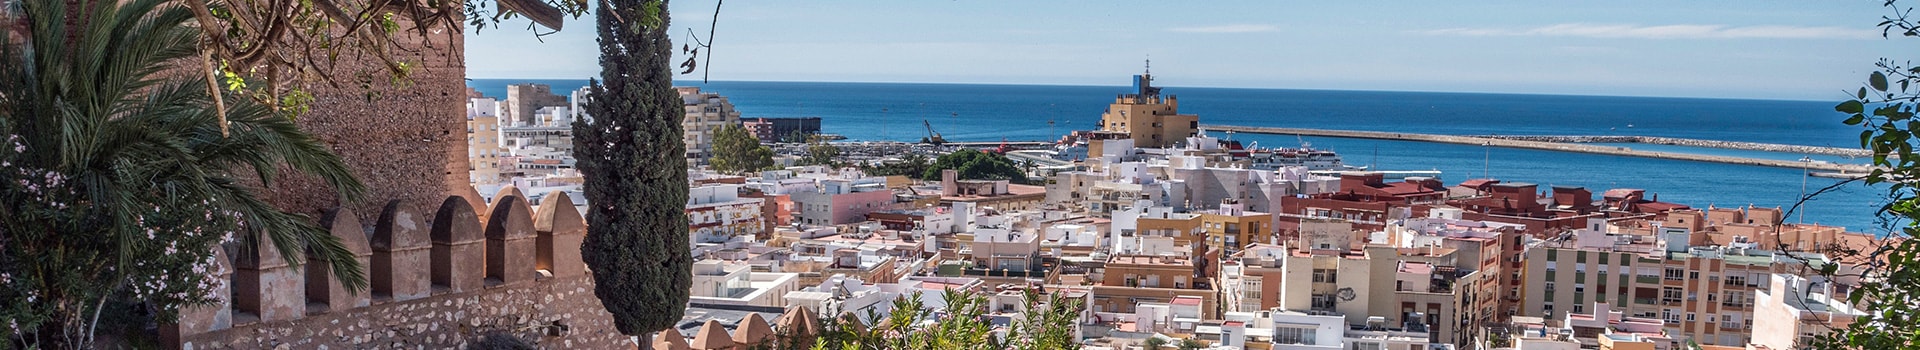 Gran Canaria - Almería